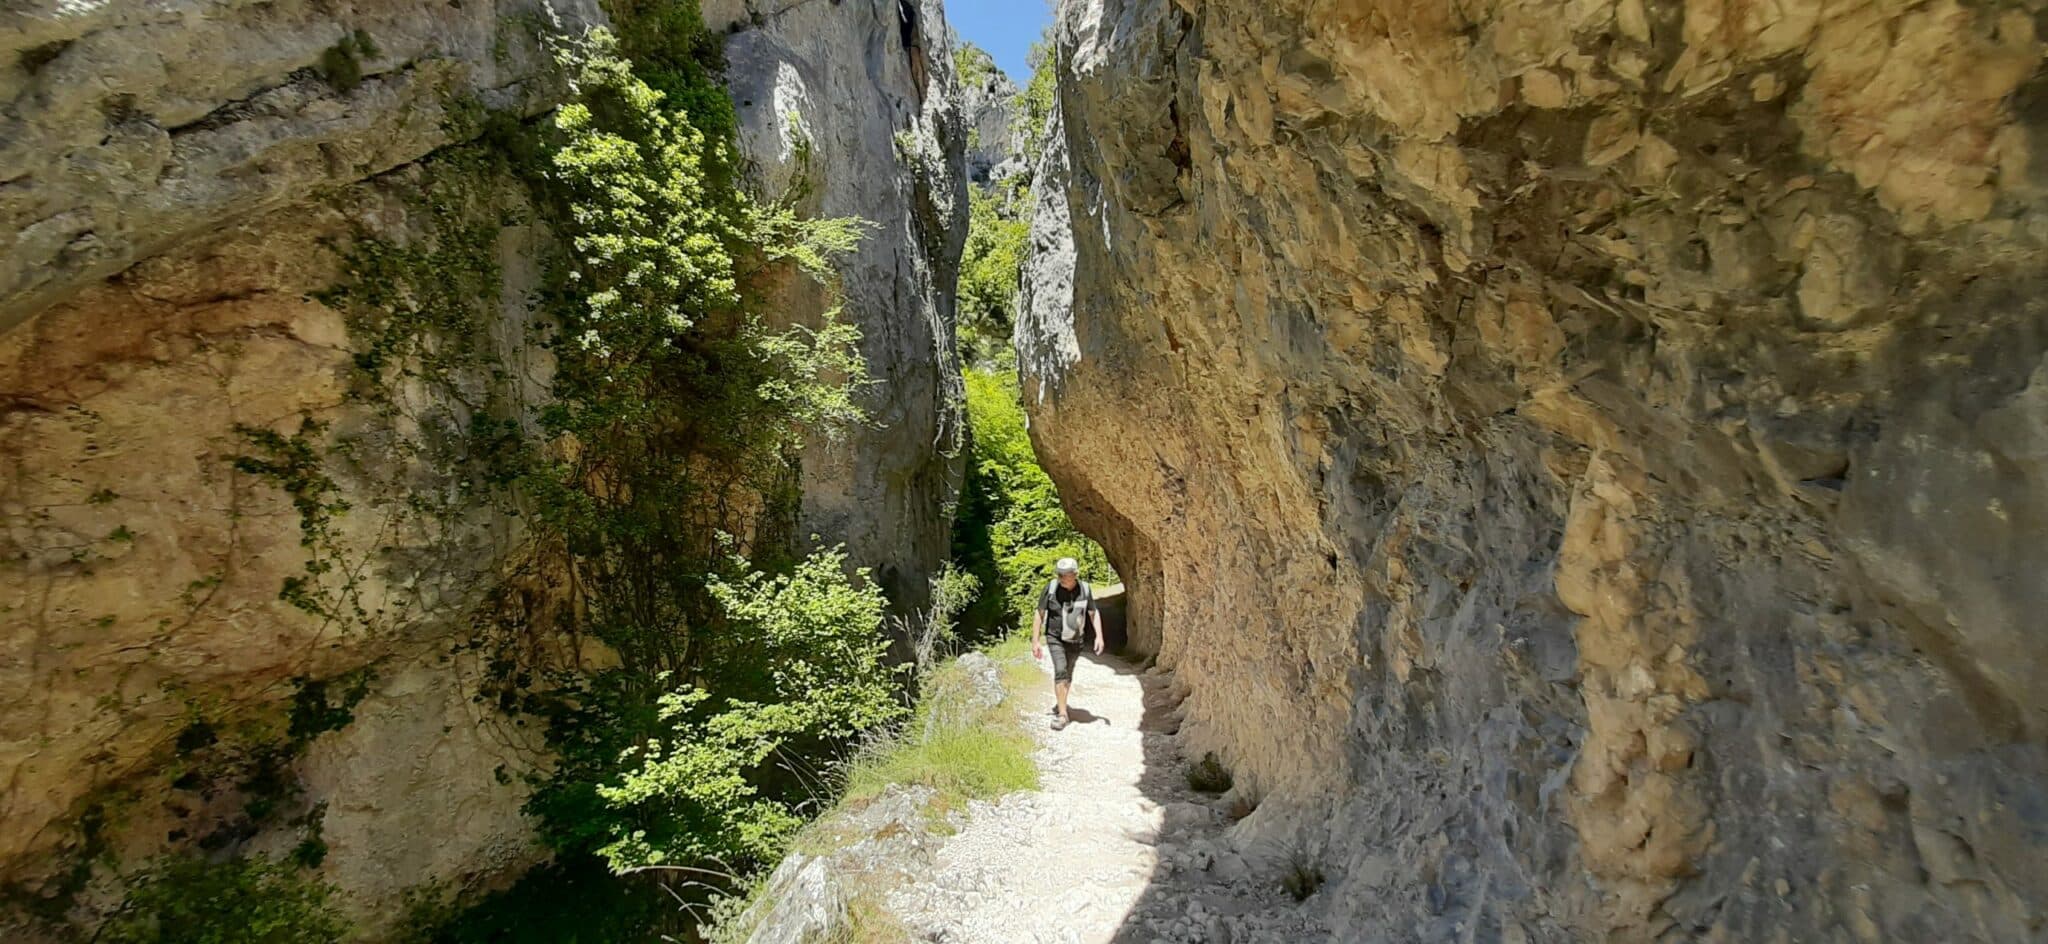 Ruta del Desfiladero del río Purón en Valderejo